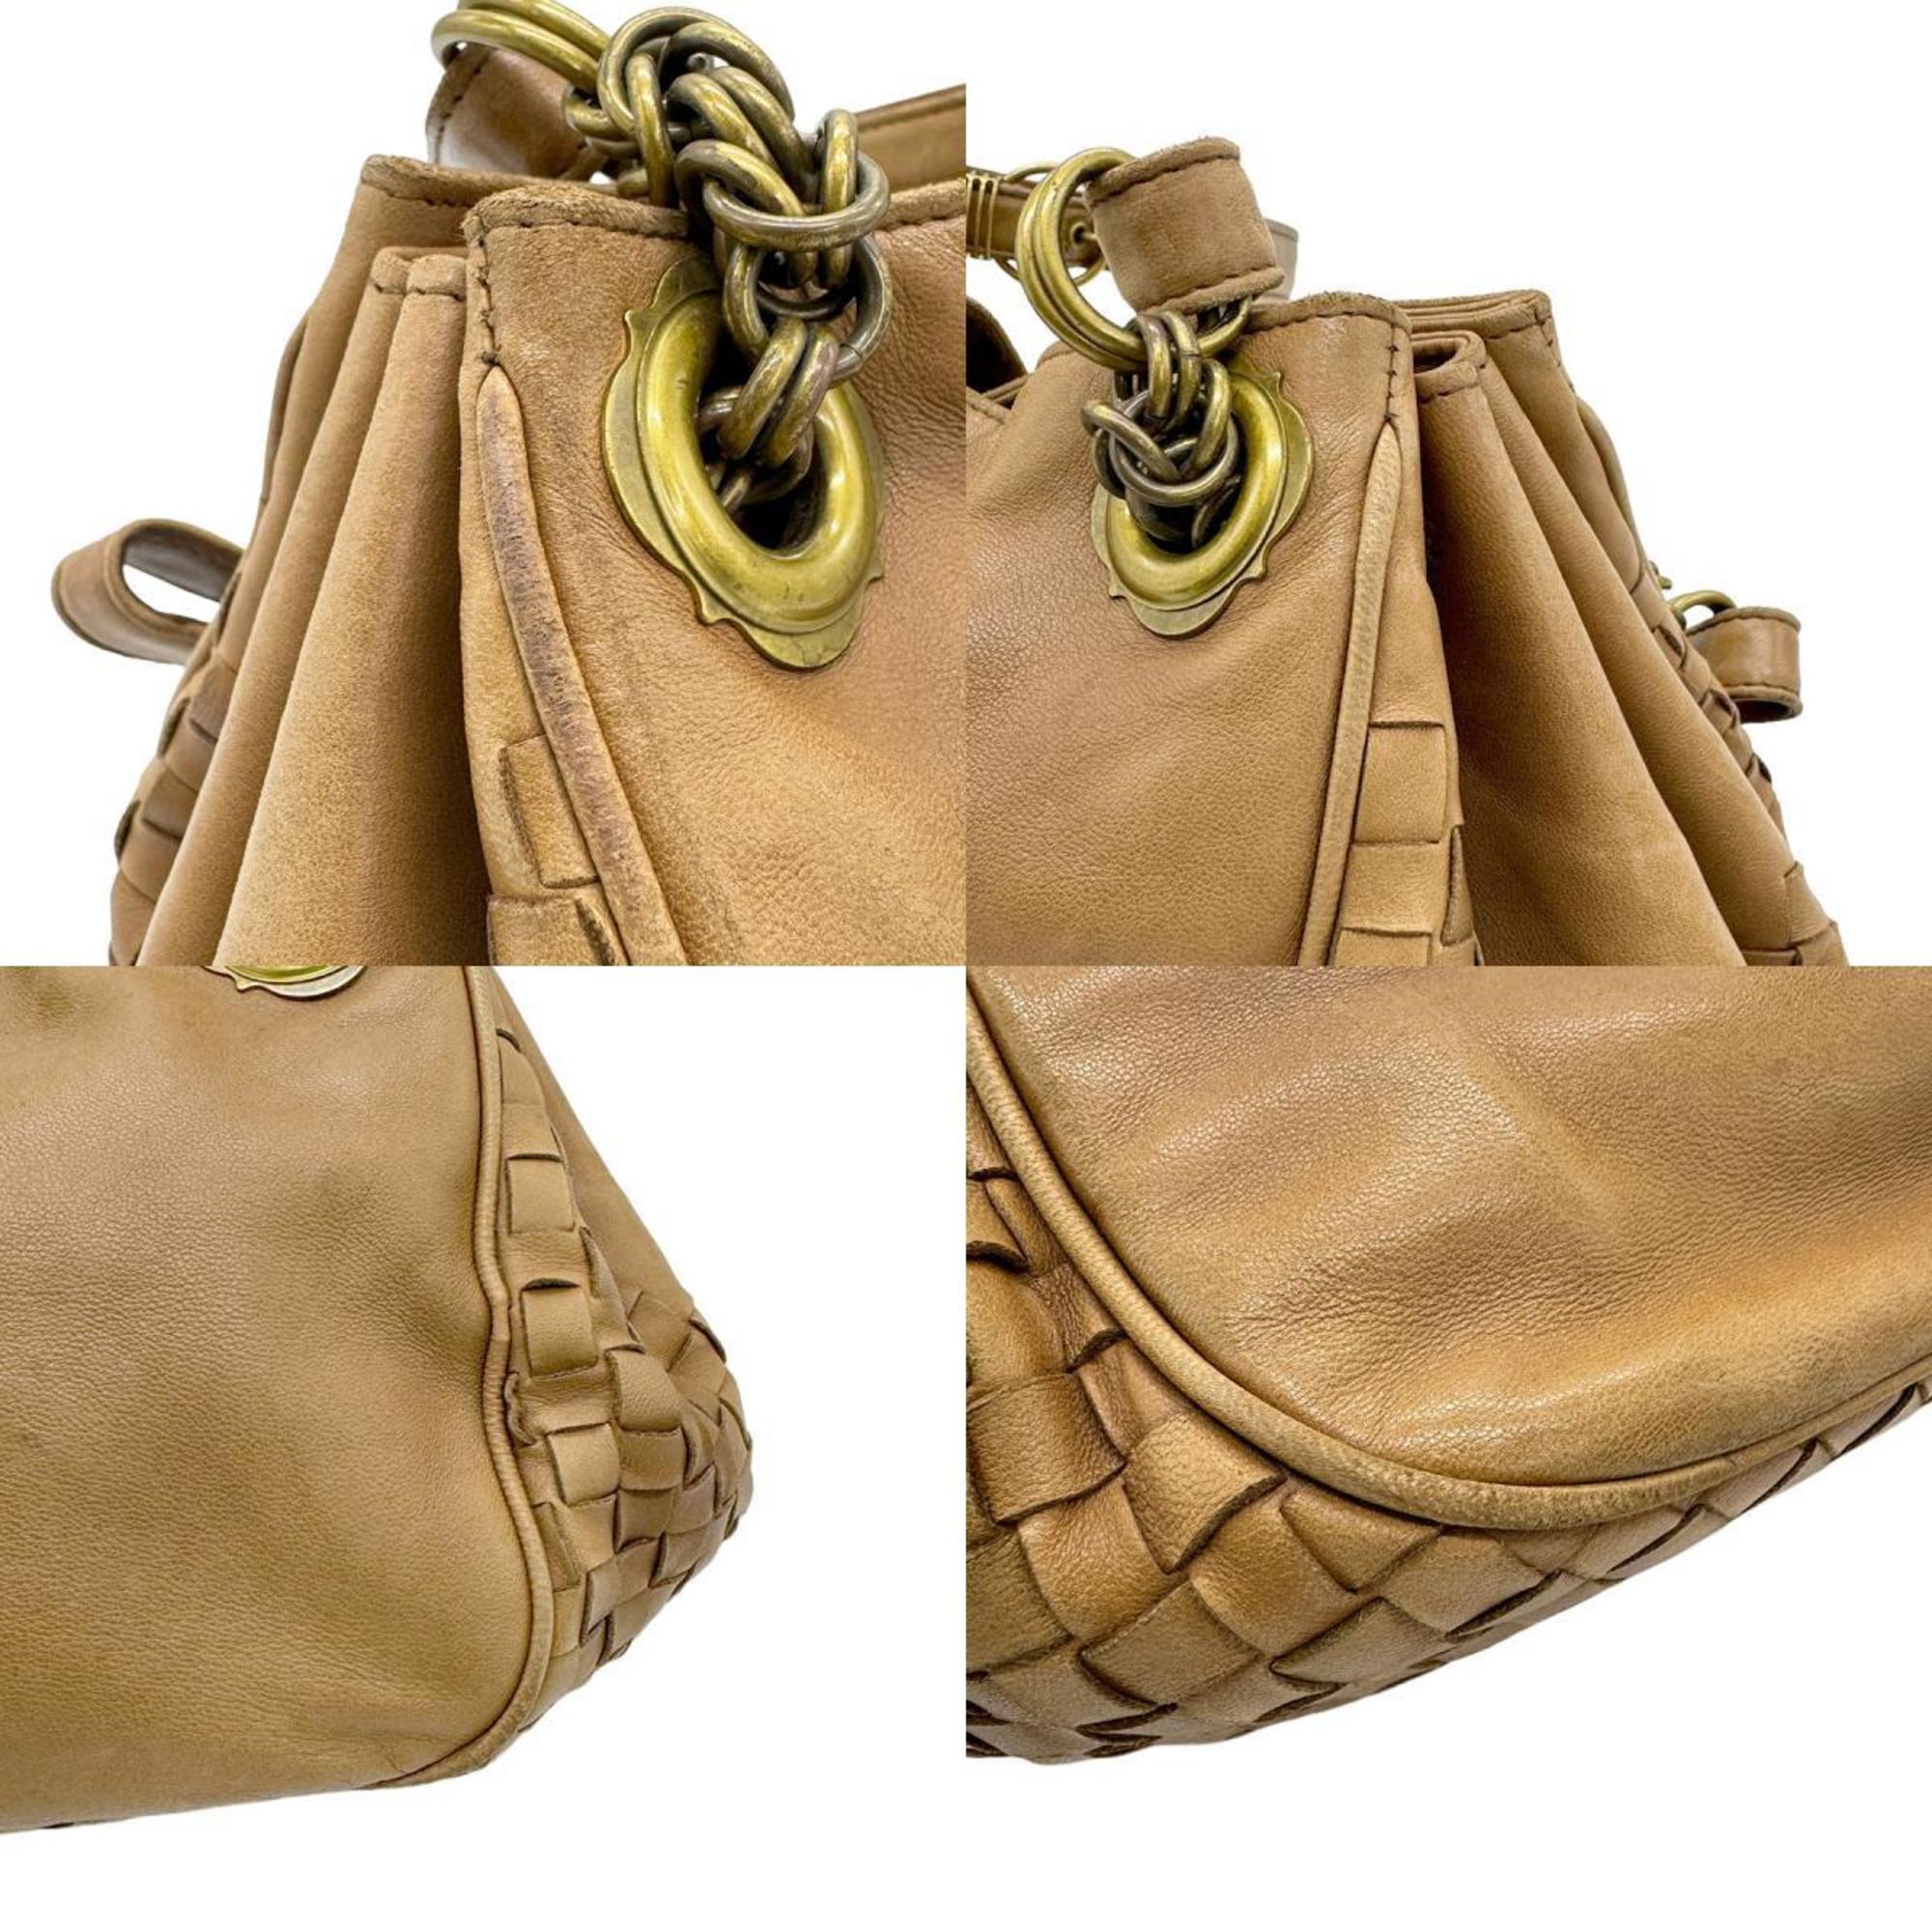 BOTTEGA VENETA Shoulder Bag Intrecciato Leather Brown Gold Women's z0638